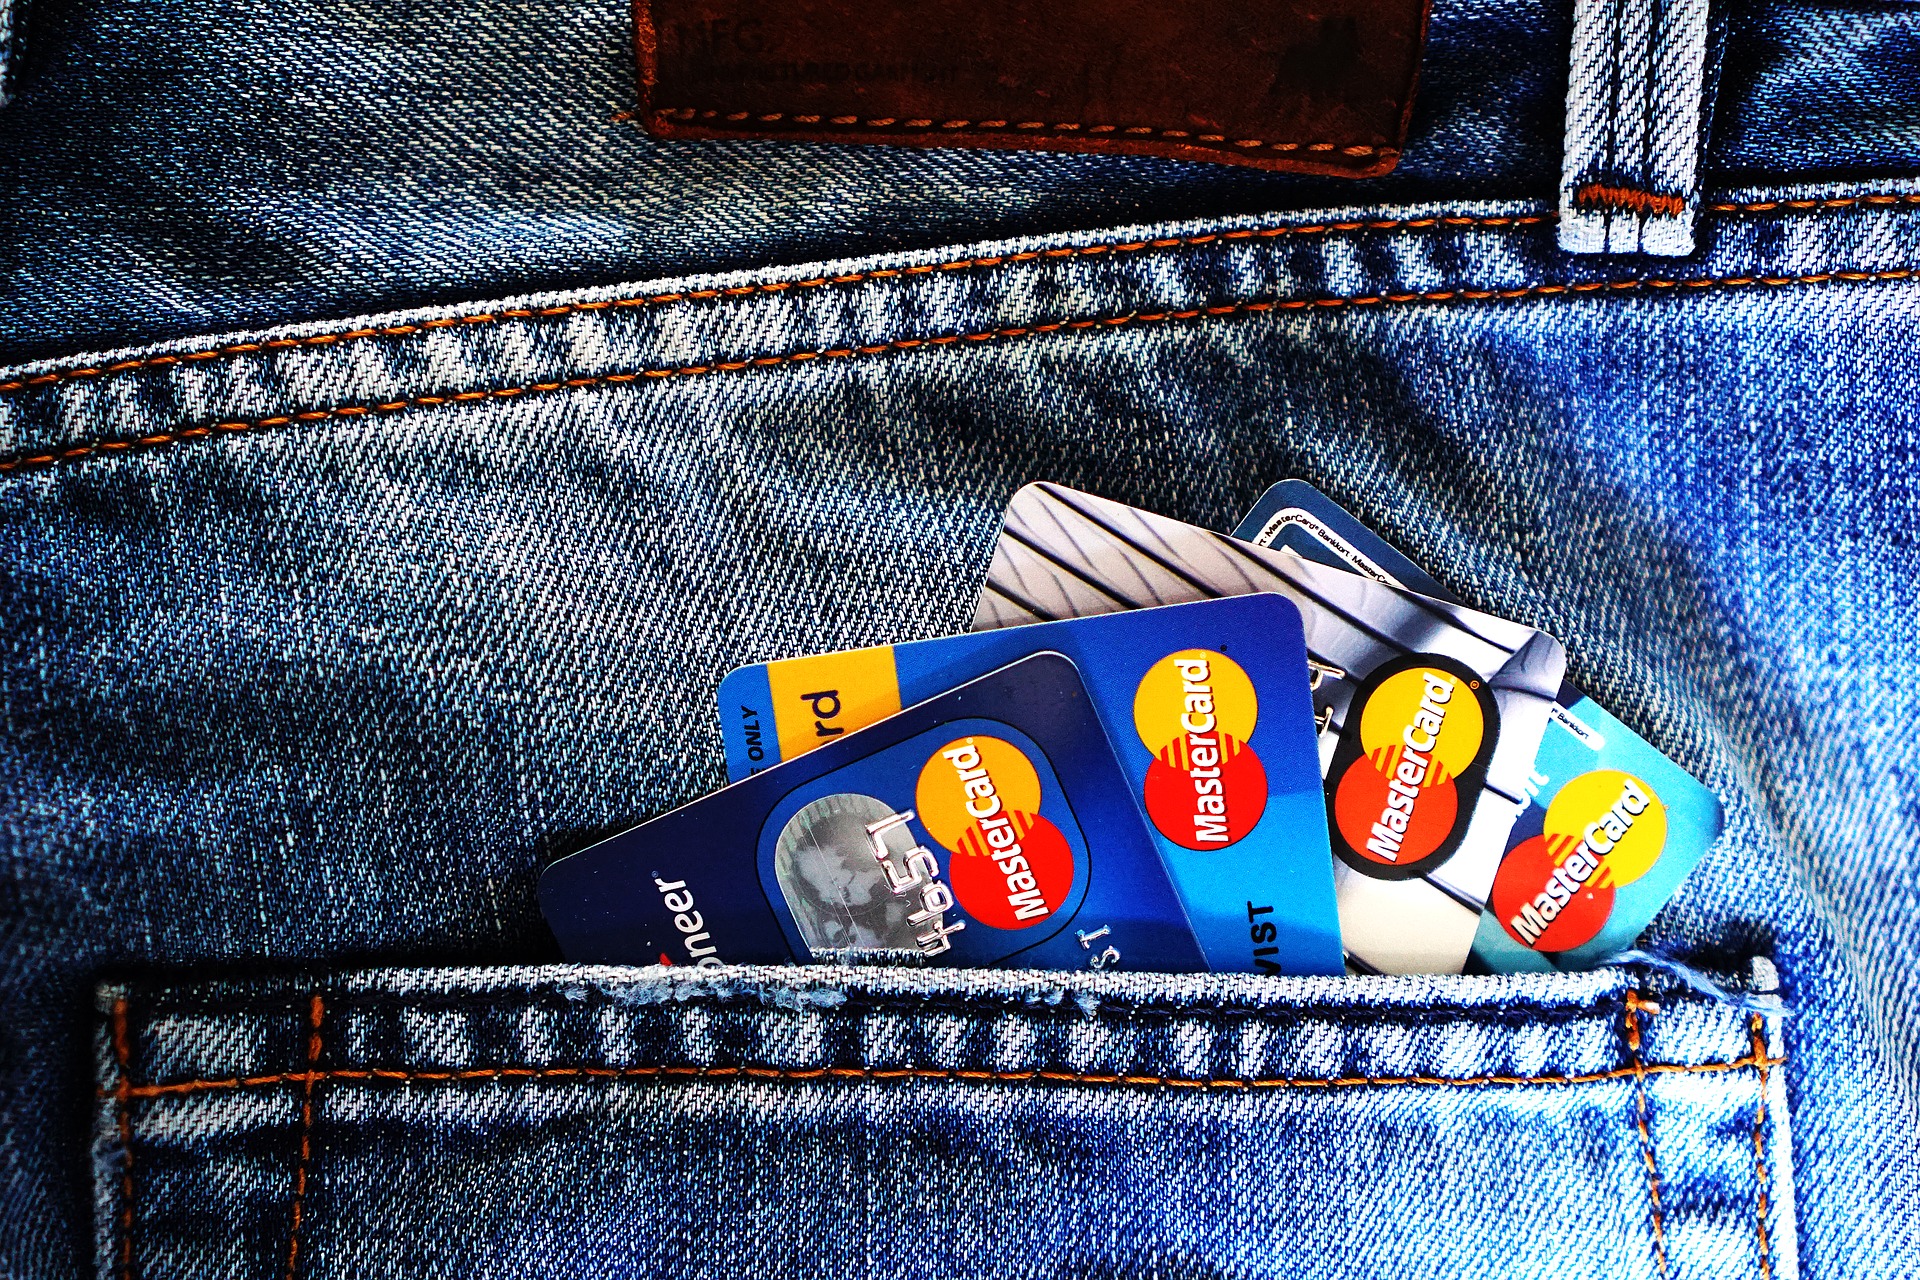 Denim jean pocket holding four credit cards